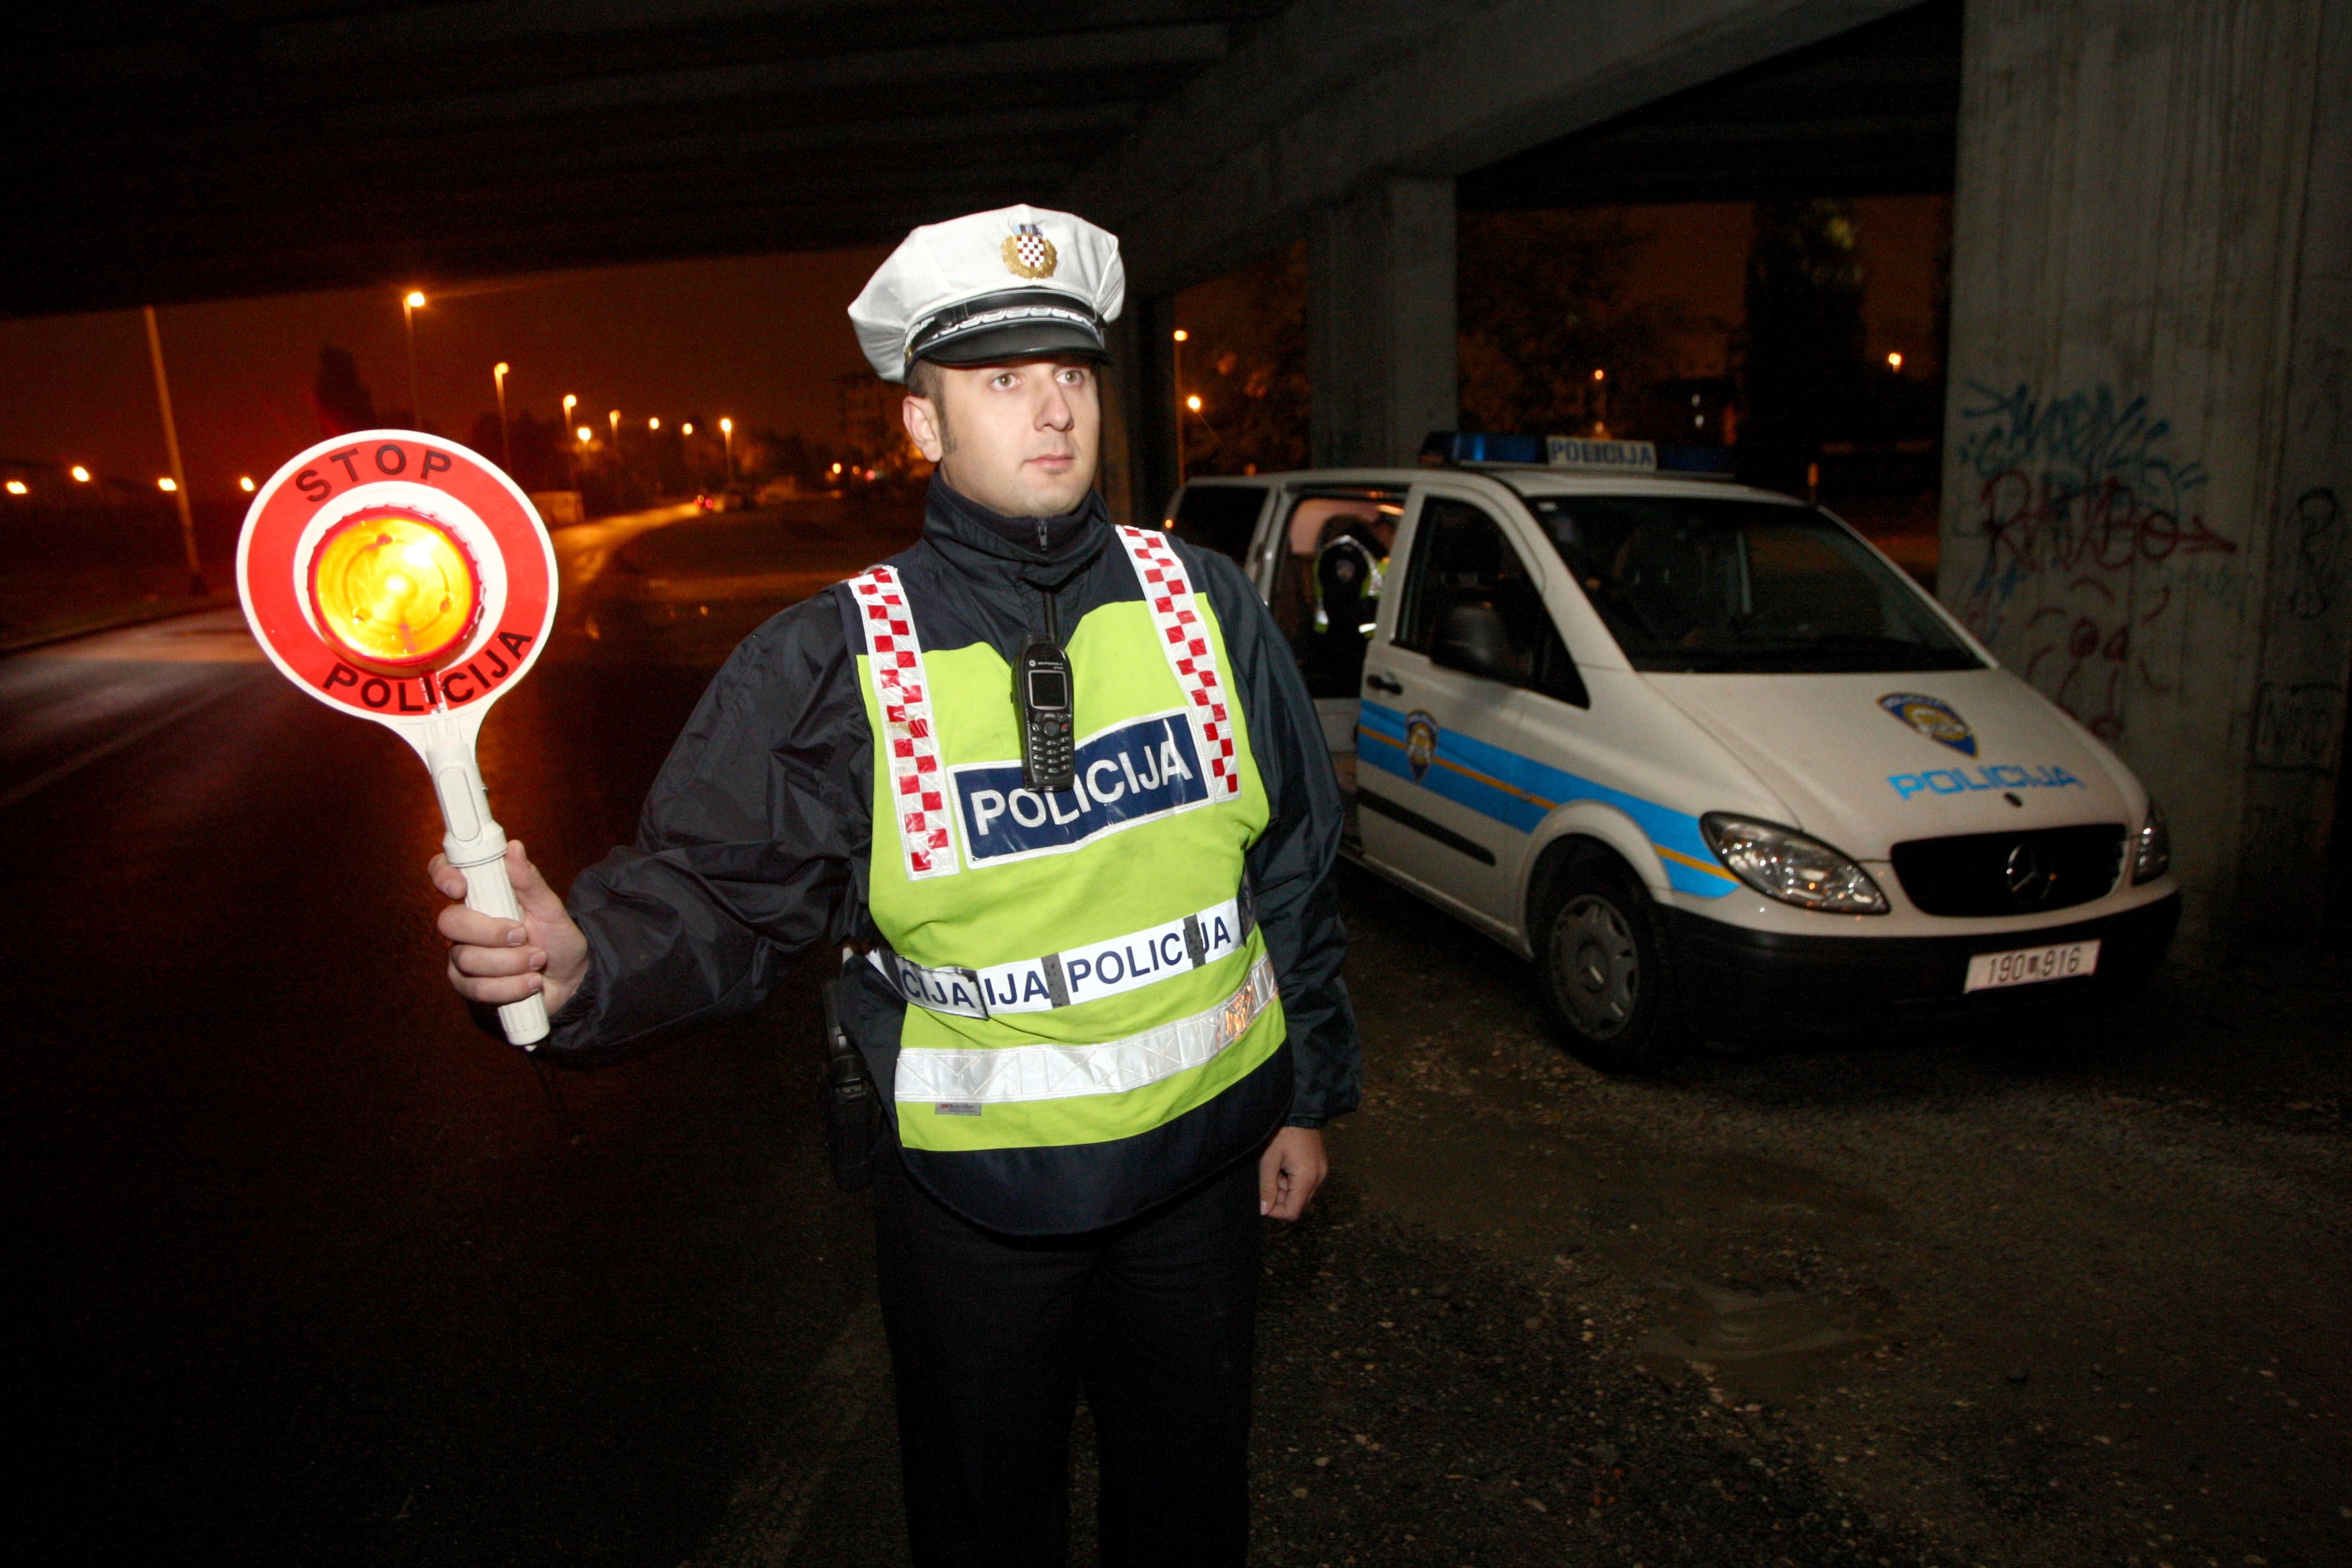 07.11.2009, Zagreb, Hrvatska - Povodom Martinja policija u prometu provodi akciju testiranja na alkohol i opojne droge.
Photo: Petar Glebov/PIXSELL